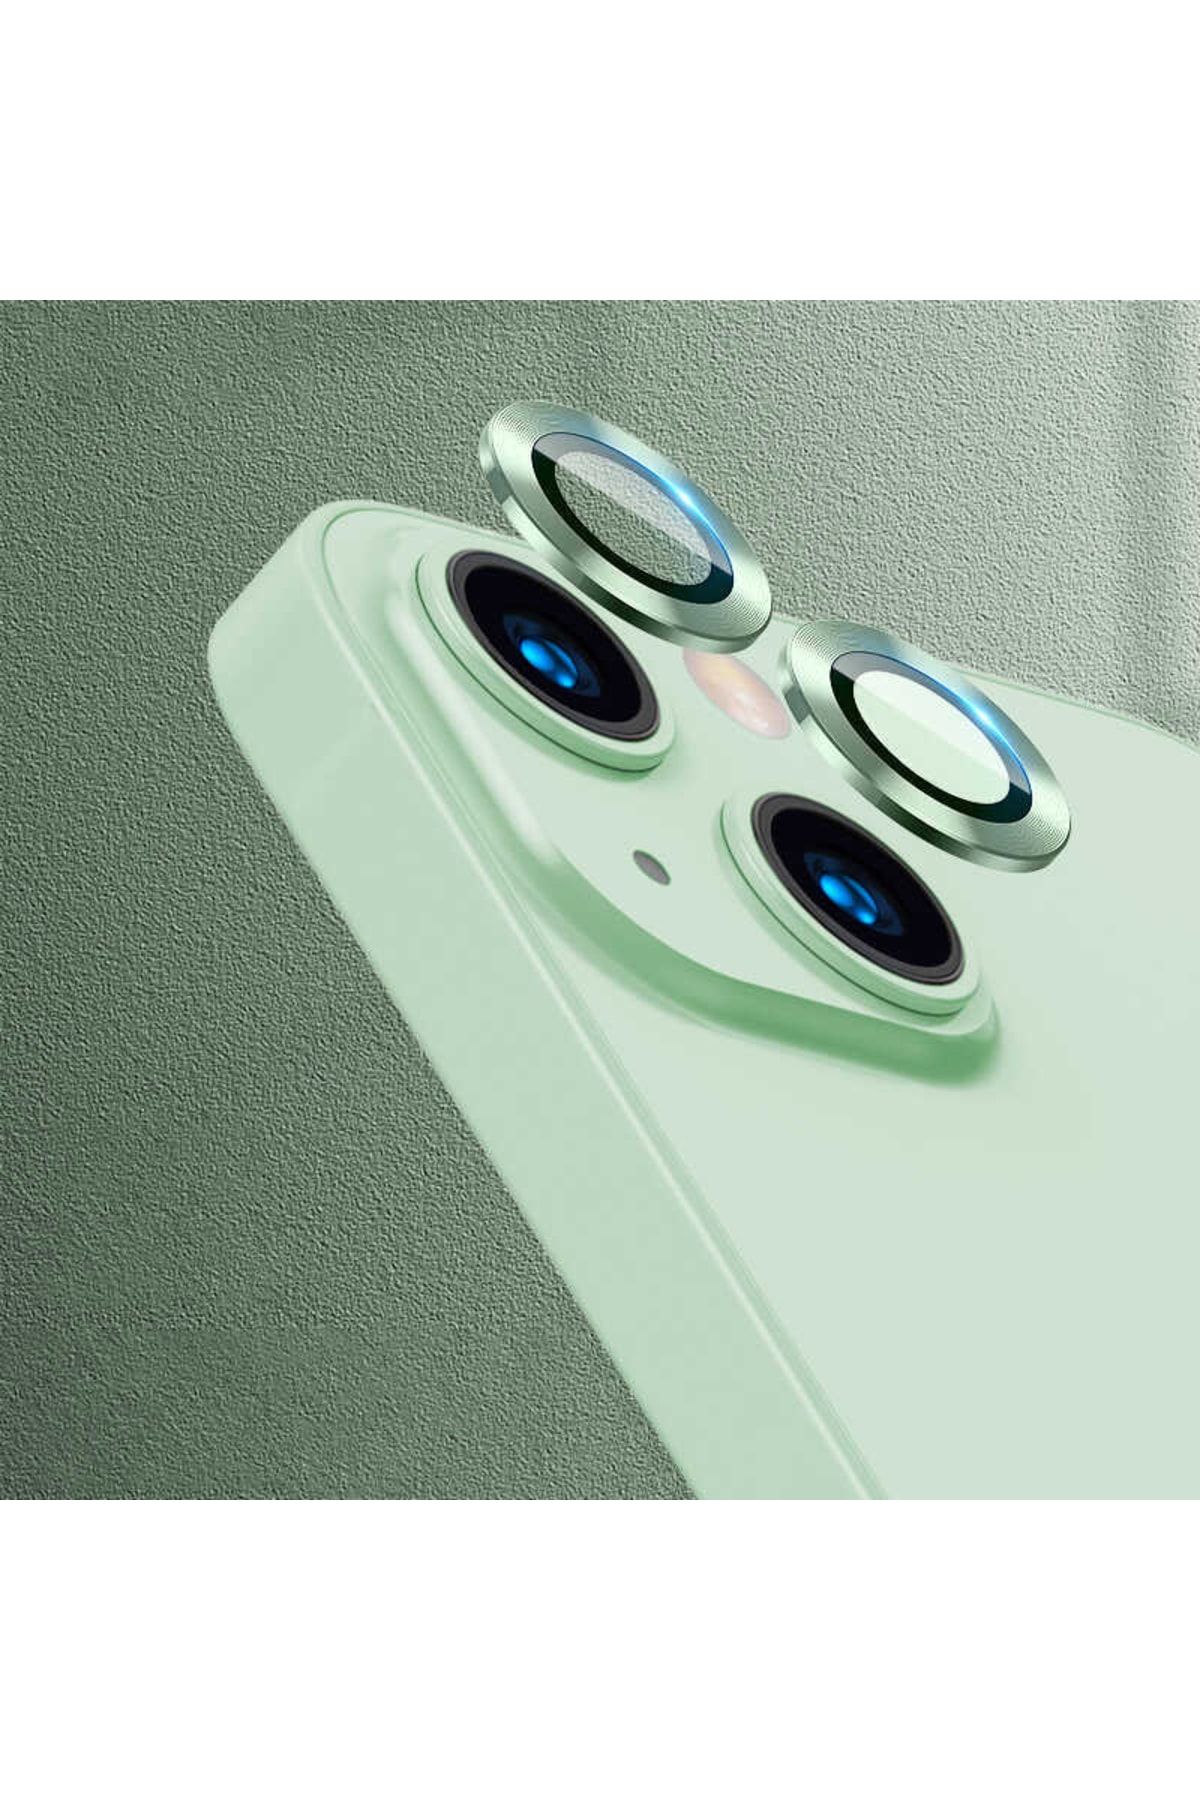 UnDePlus Iphone 13 Mini Uyumlu Kamera Lens Koruyucu Çerçeveli Koruyucu Cl-07